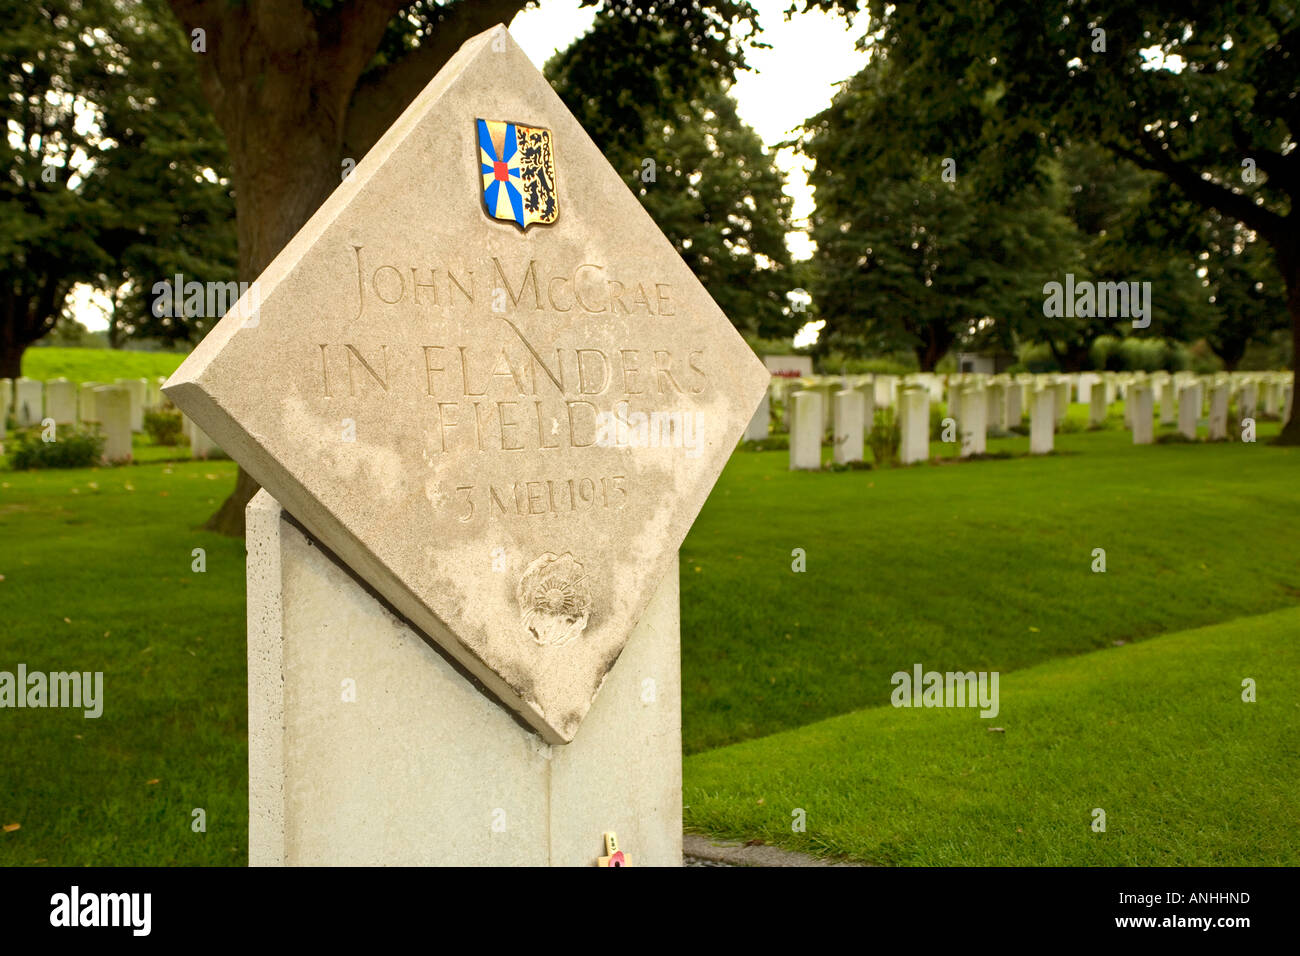 Marqueur de l'Albertina John McCrae au champ d'honneur de l'auteur poème à Essex Farm Cemetery près de Ypres, Belgique Banque D'Images